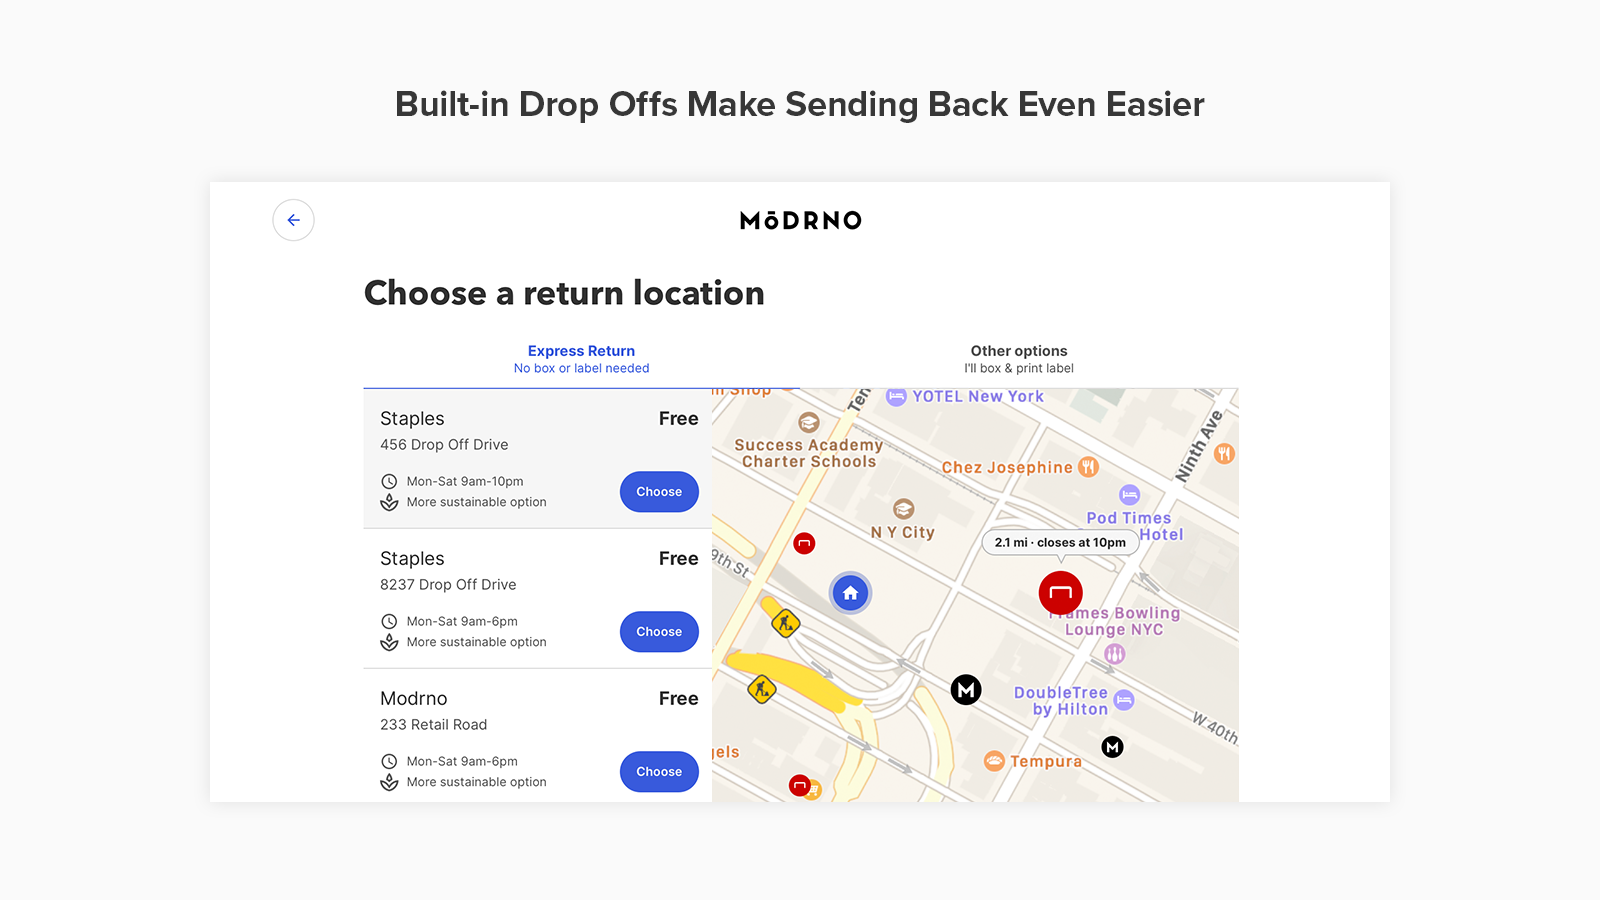 Built-in Drop Offs Make Sending Back Even Easier